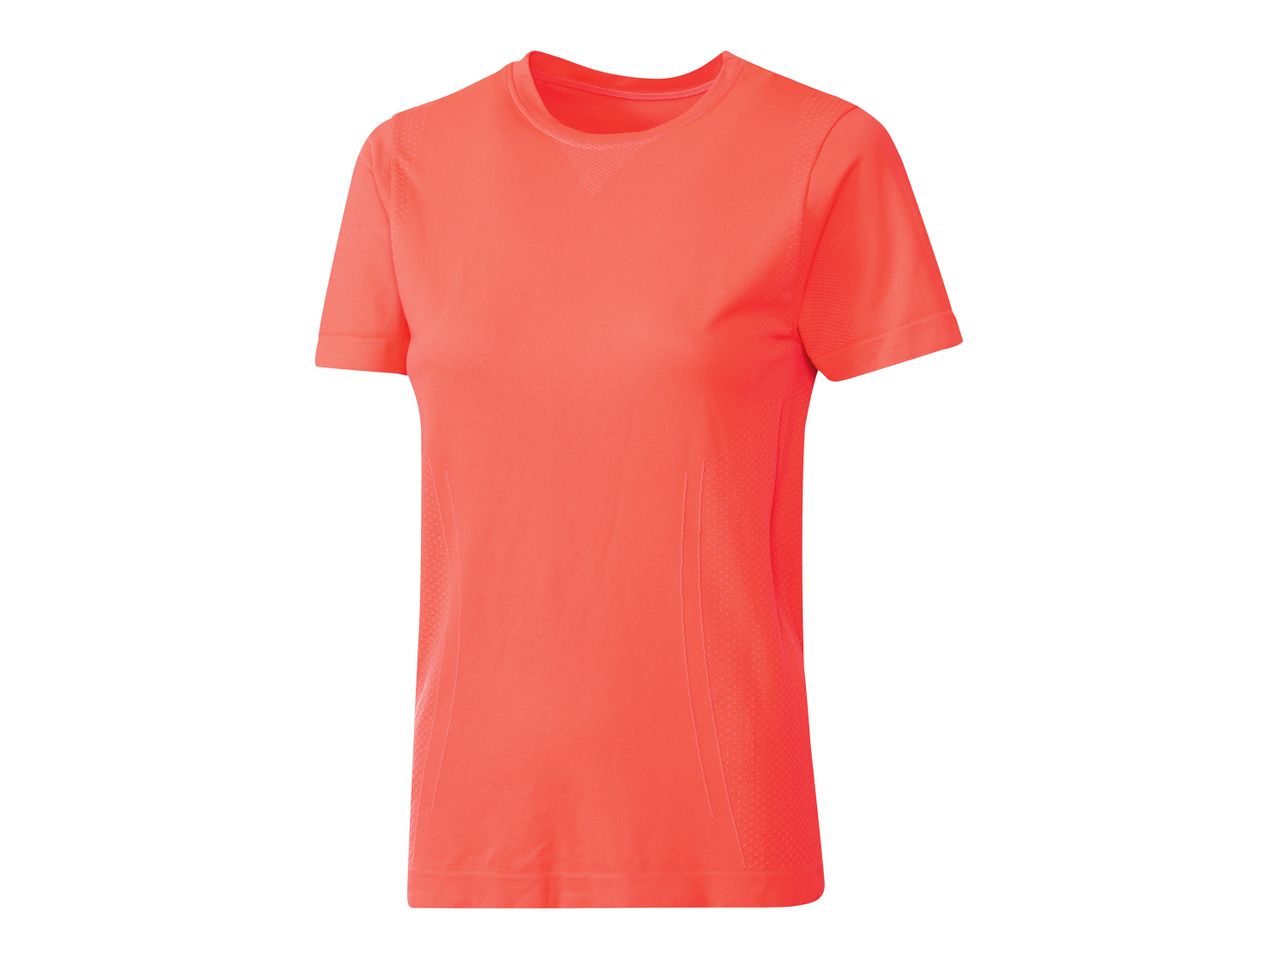 T-shirt sportiva da donna , prezzo 5.99 EUR 
T-shirt sportiva da donna Misure: S-L ...